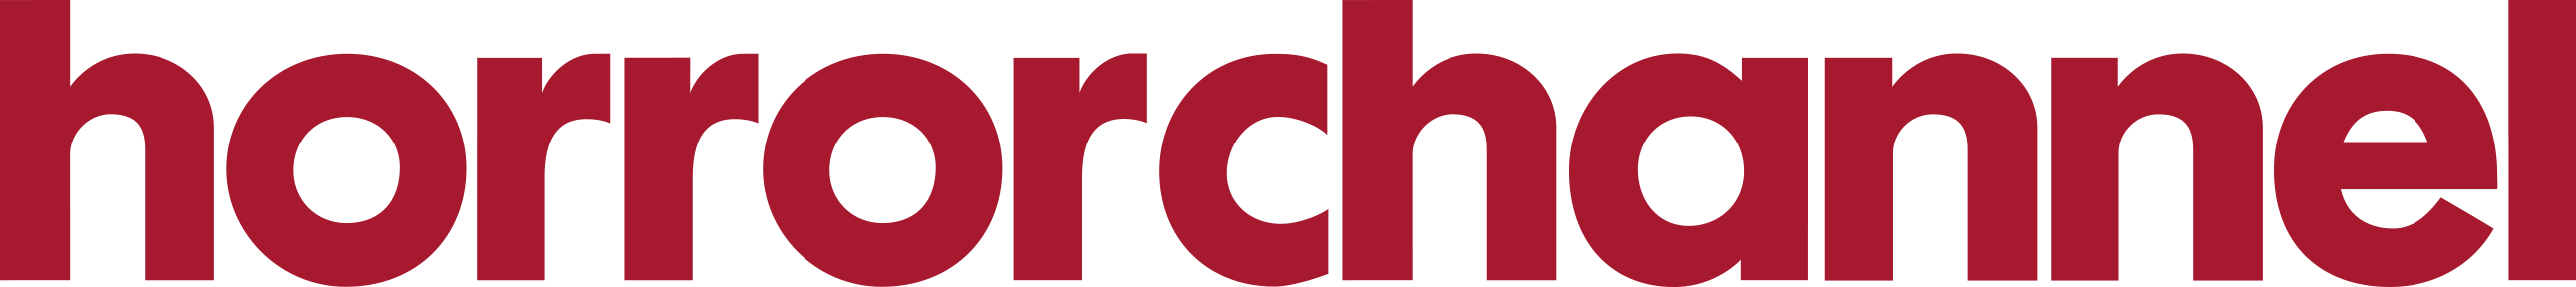 horror channel logo